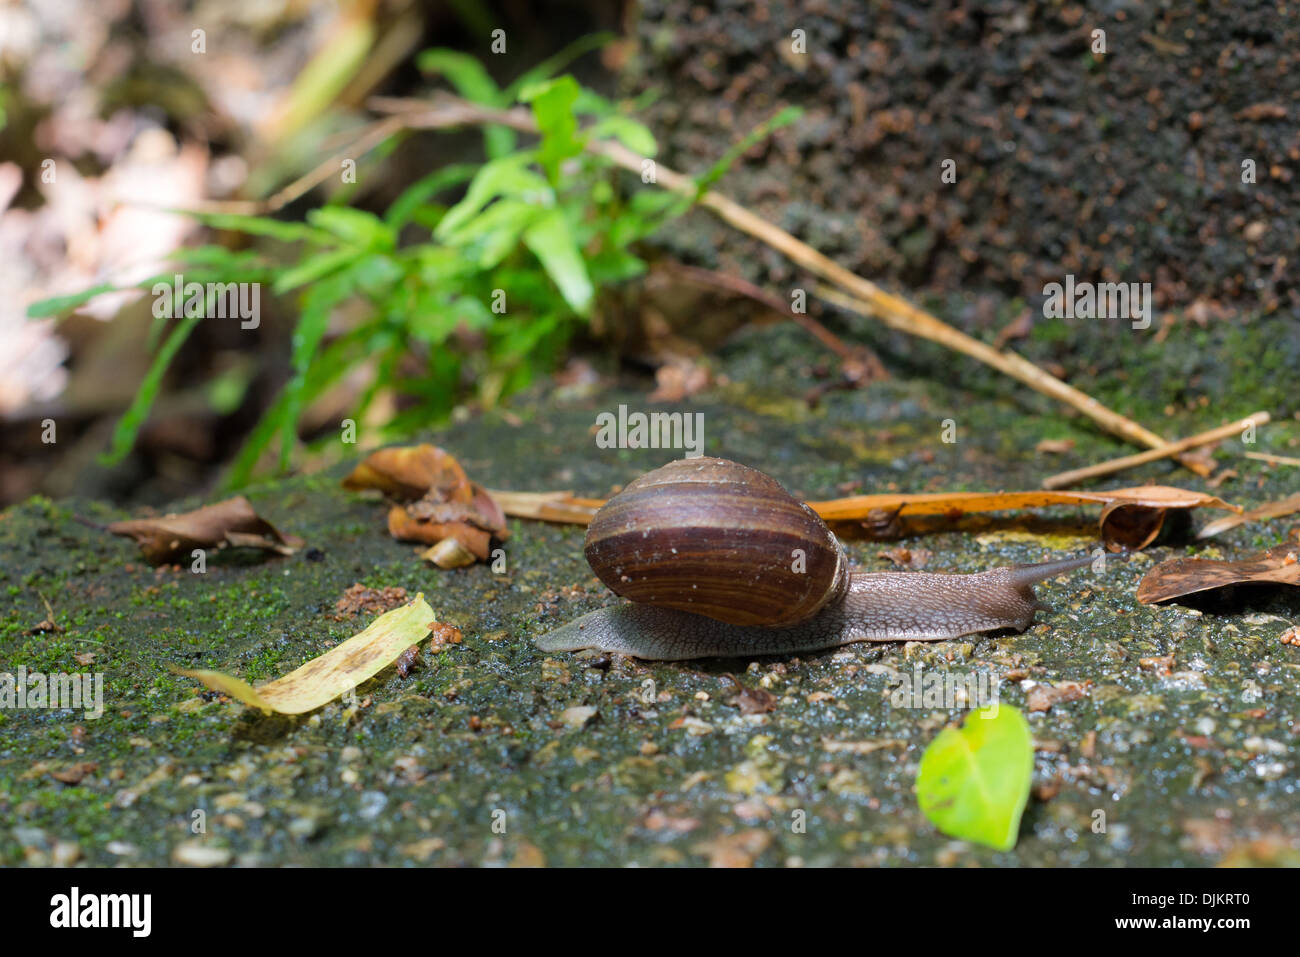 Snail running on the rock floor Stock Photo